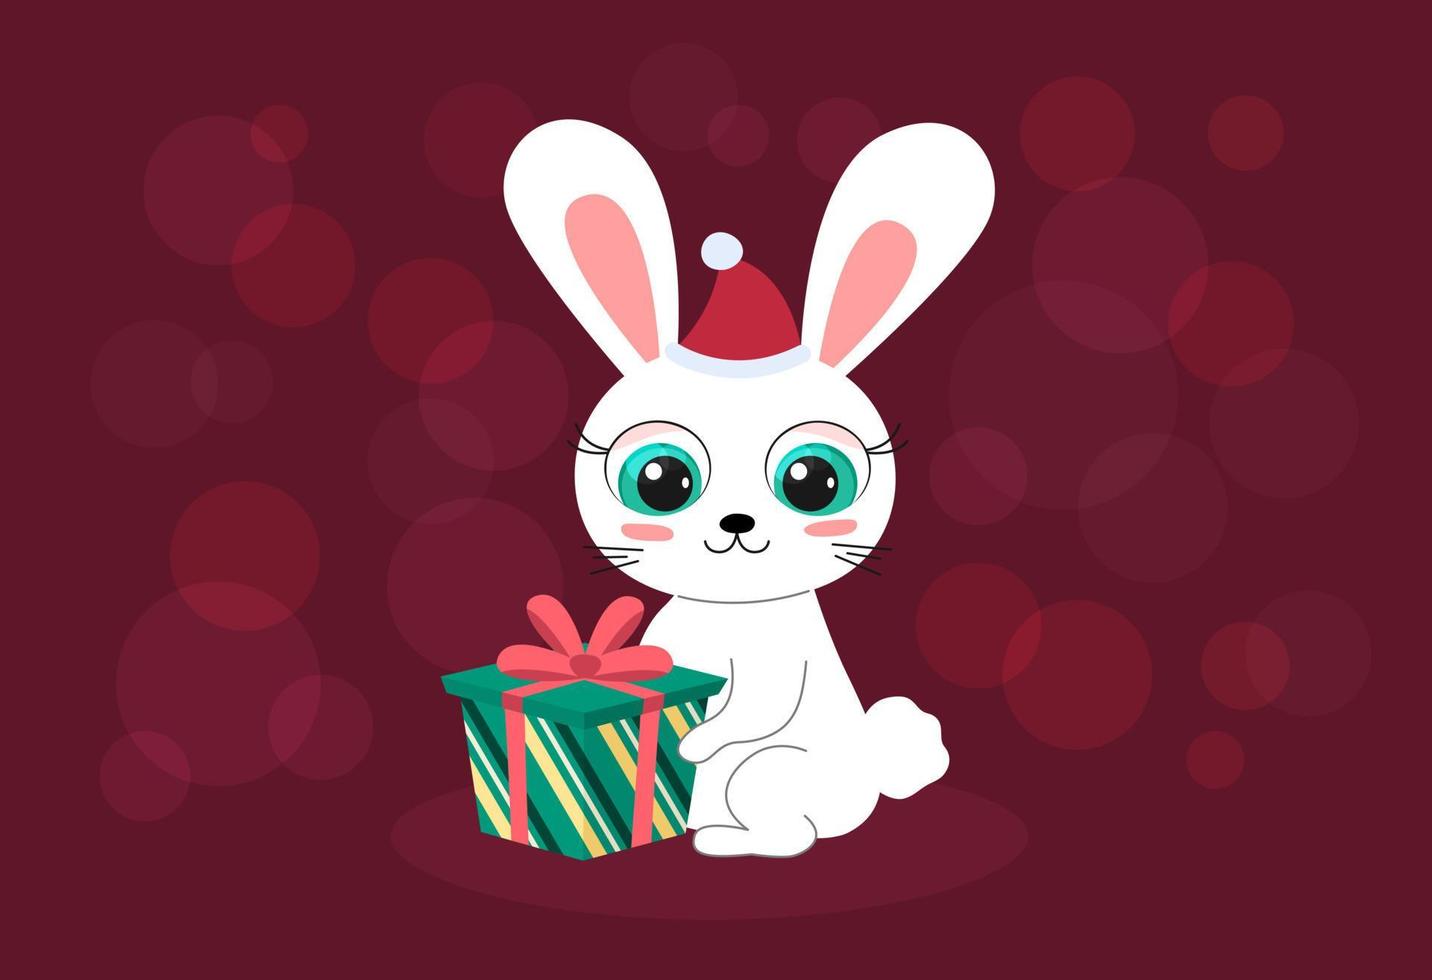 feliz año nuevo 2023 tarjeta de felicitación. lindo conejo de dibujos animados con una colorida caja de regalo de navidad. divertido personaje de conejito se sienta y sonríe. 2023 año de conejo. ilustración plana vectorial vector